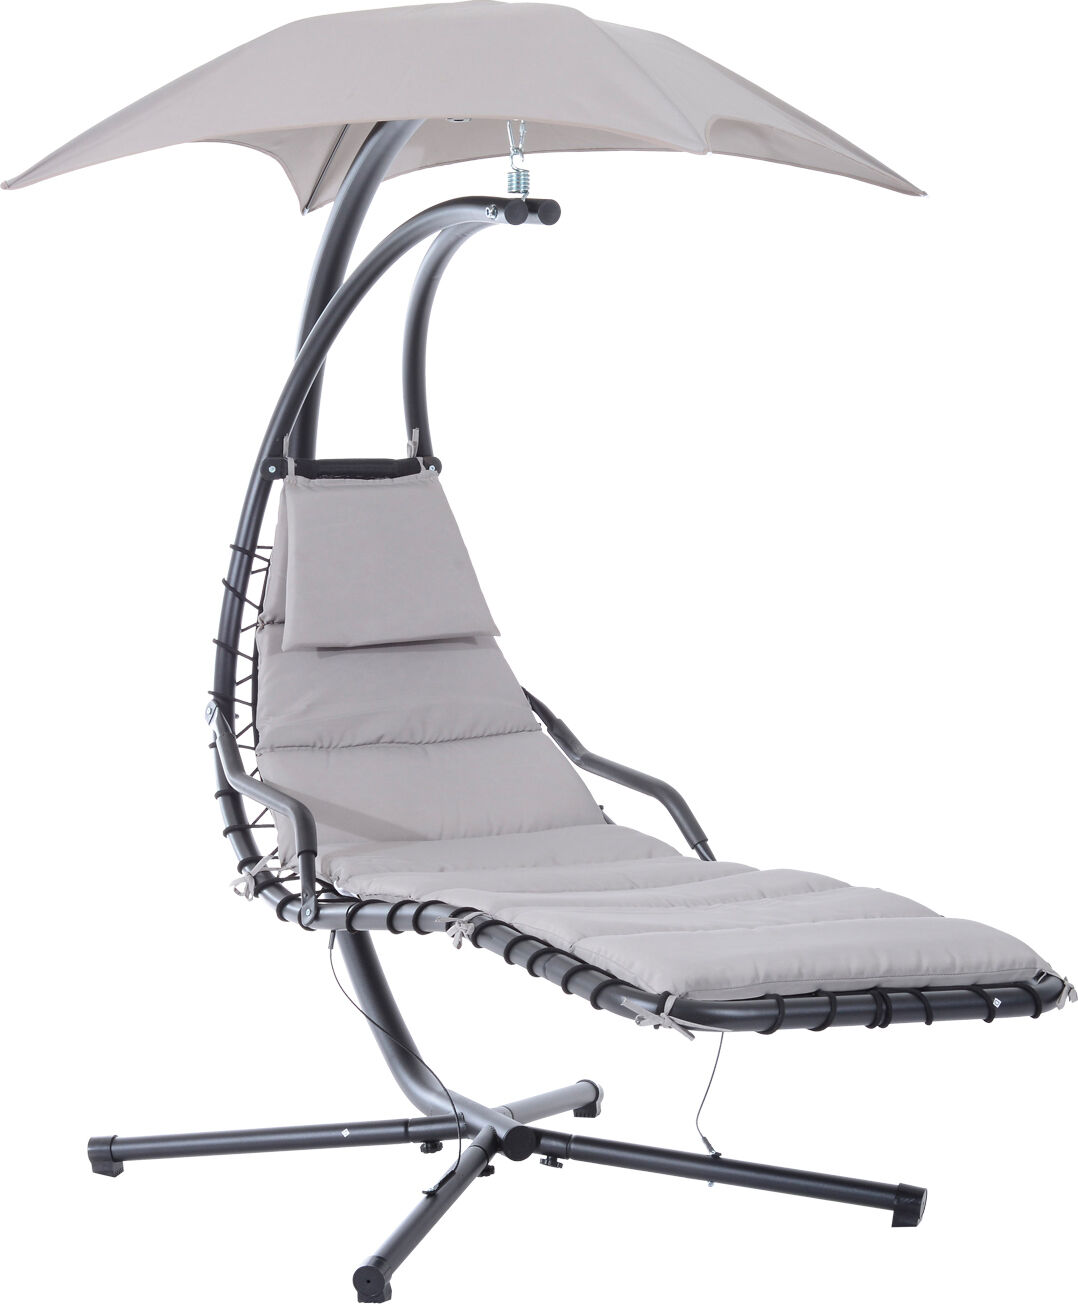 vivagarden 84a04dgy lettino sdraio sospeso relax chaise longue di lusso con tettuccio grigio - 84a04dgy